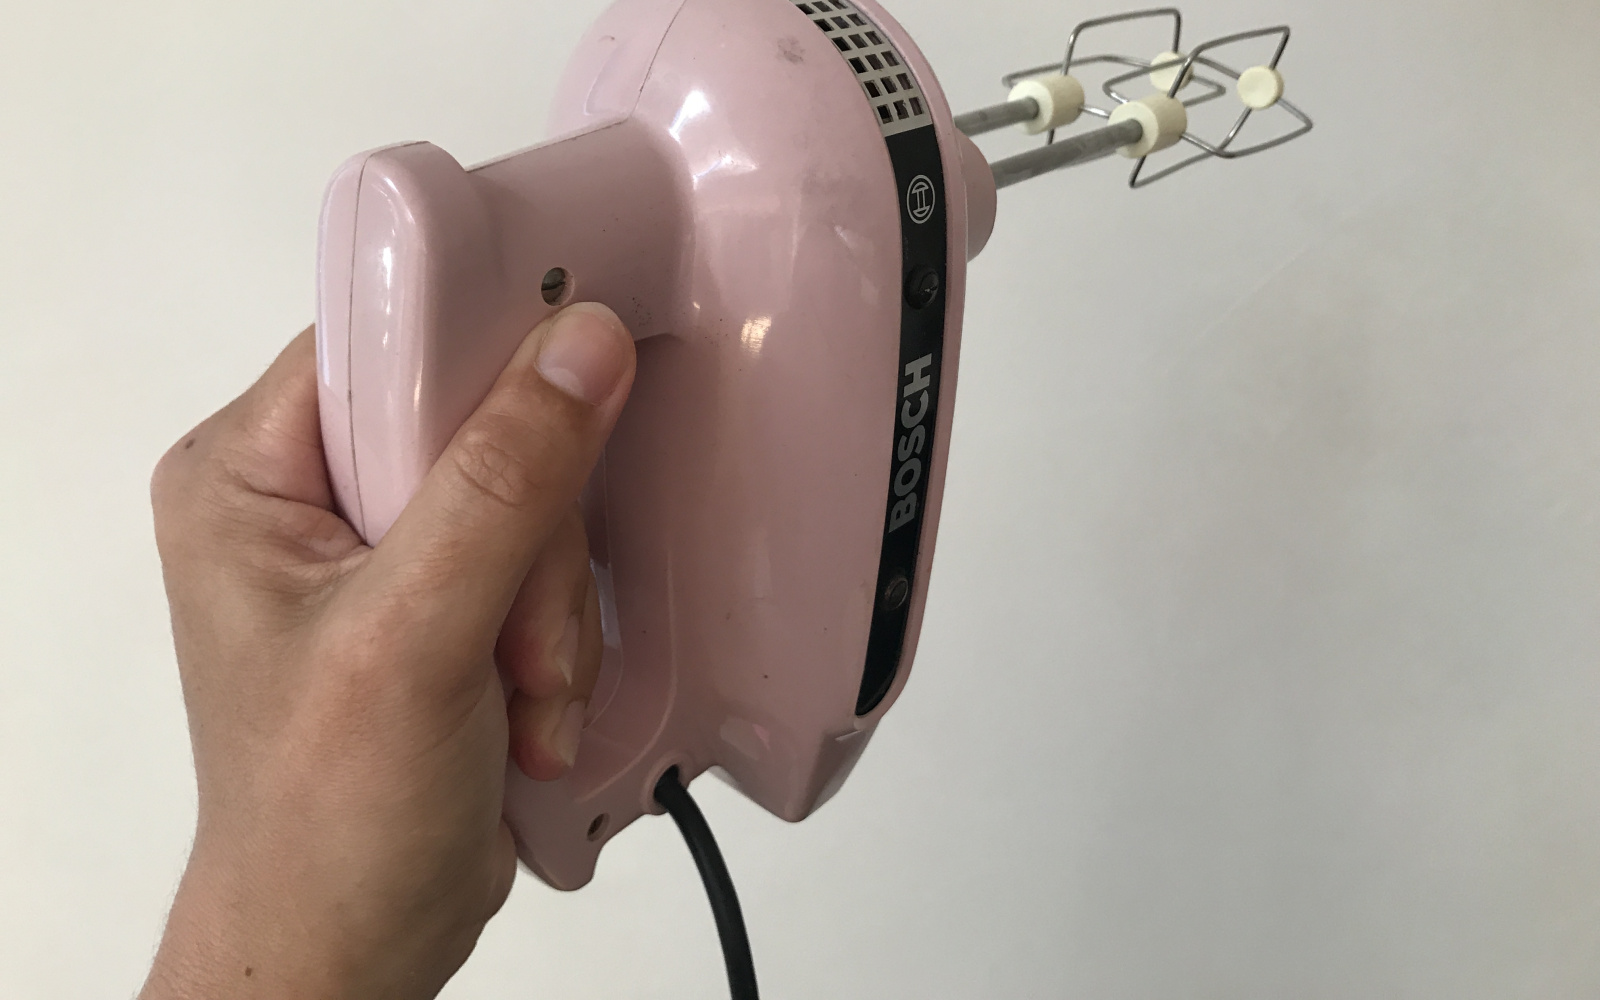 Vor einer weißen Wand wird ein rosafarbener Handrührer waagrecht hochgehoben.